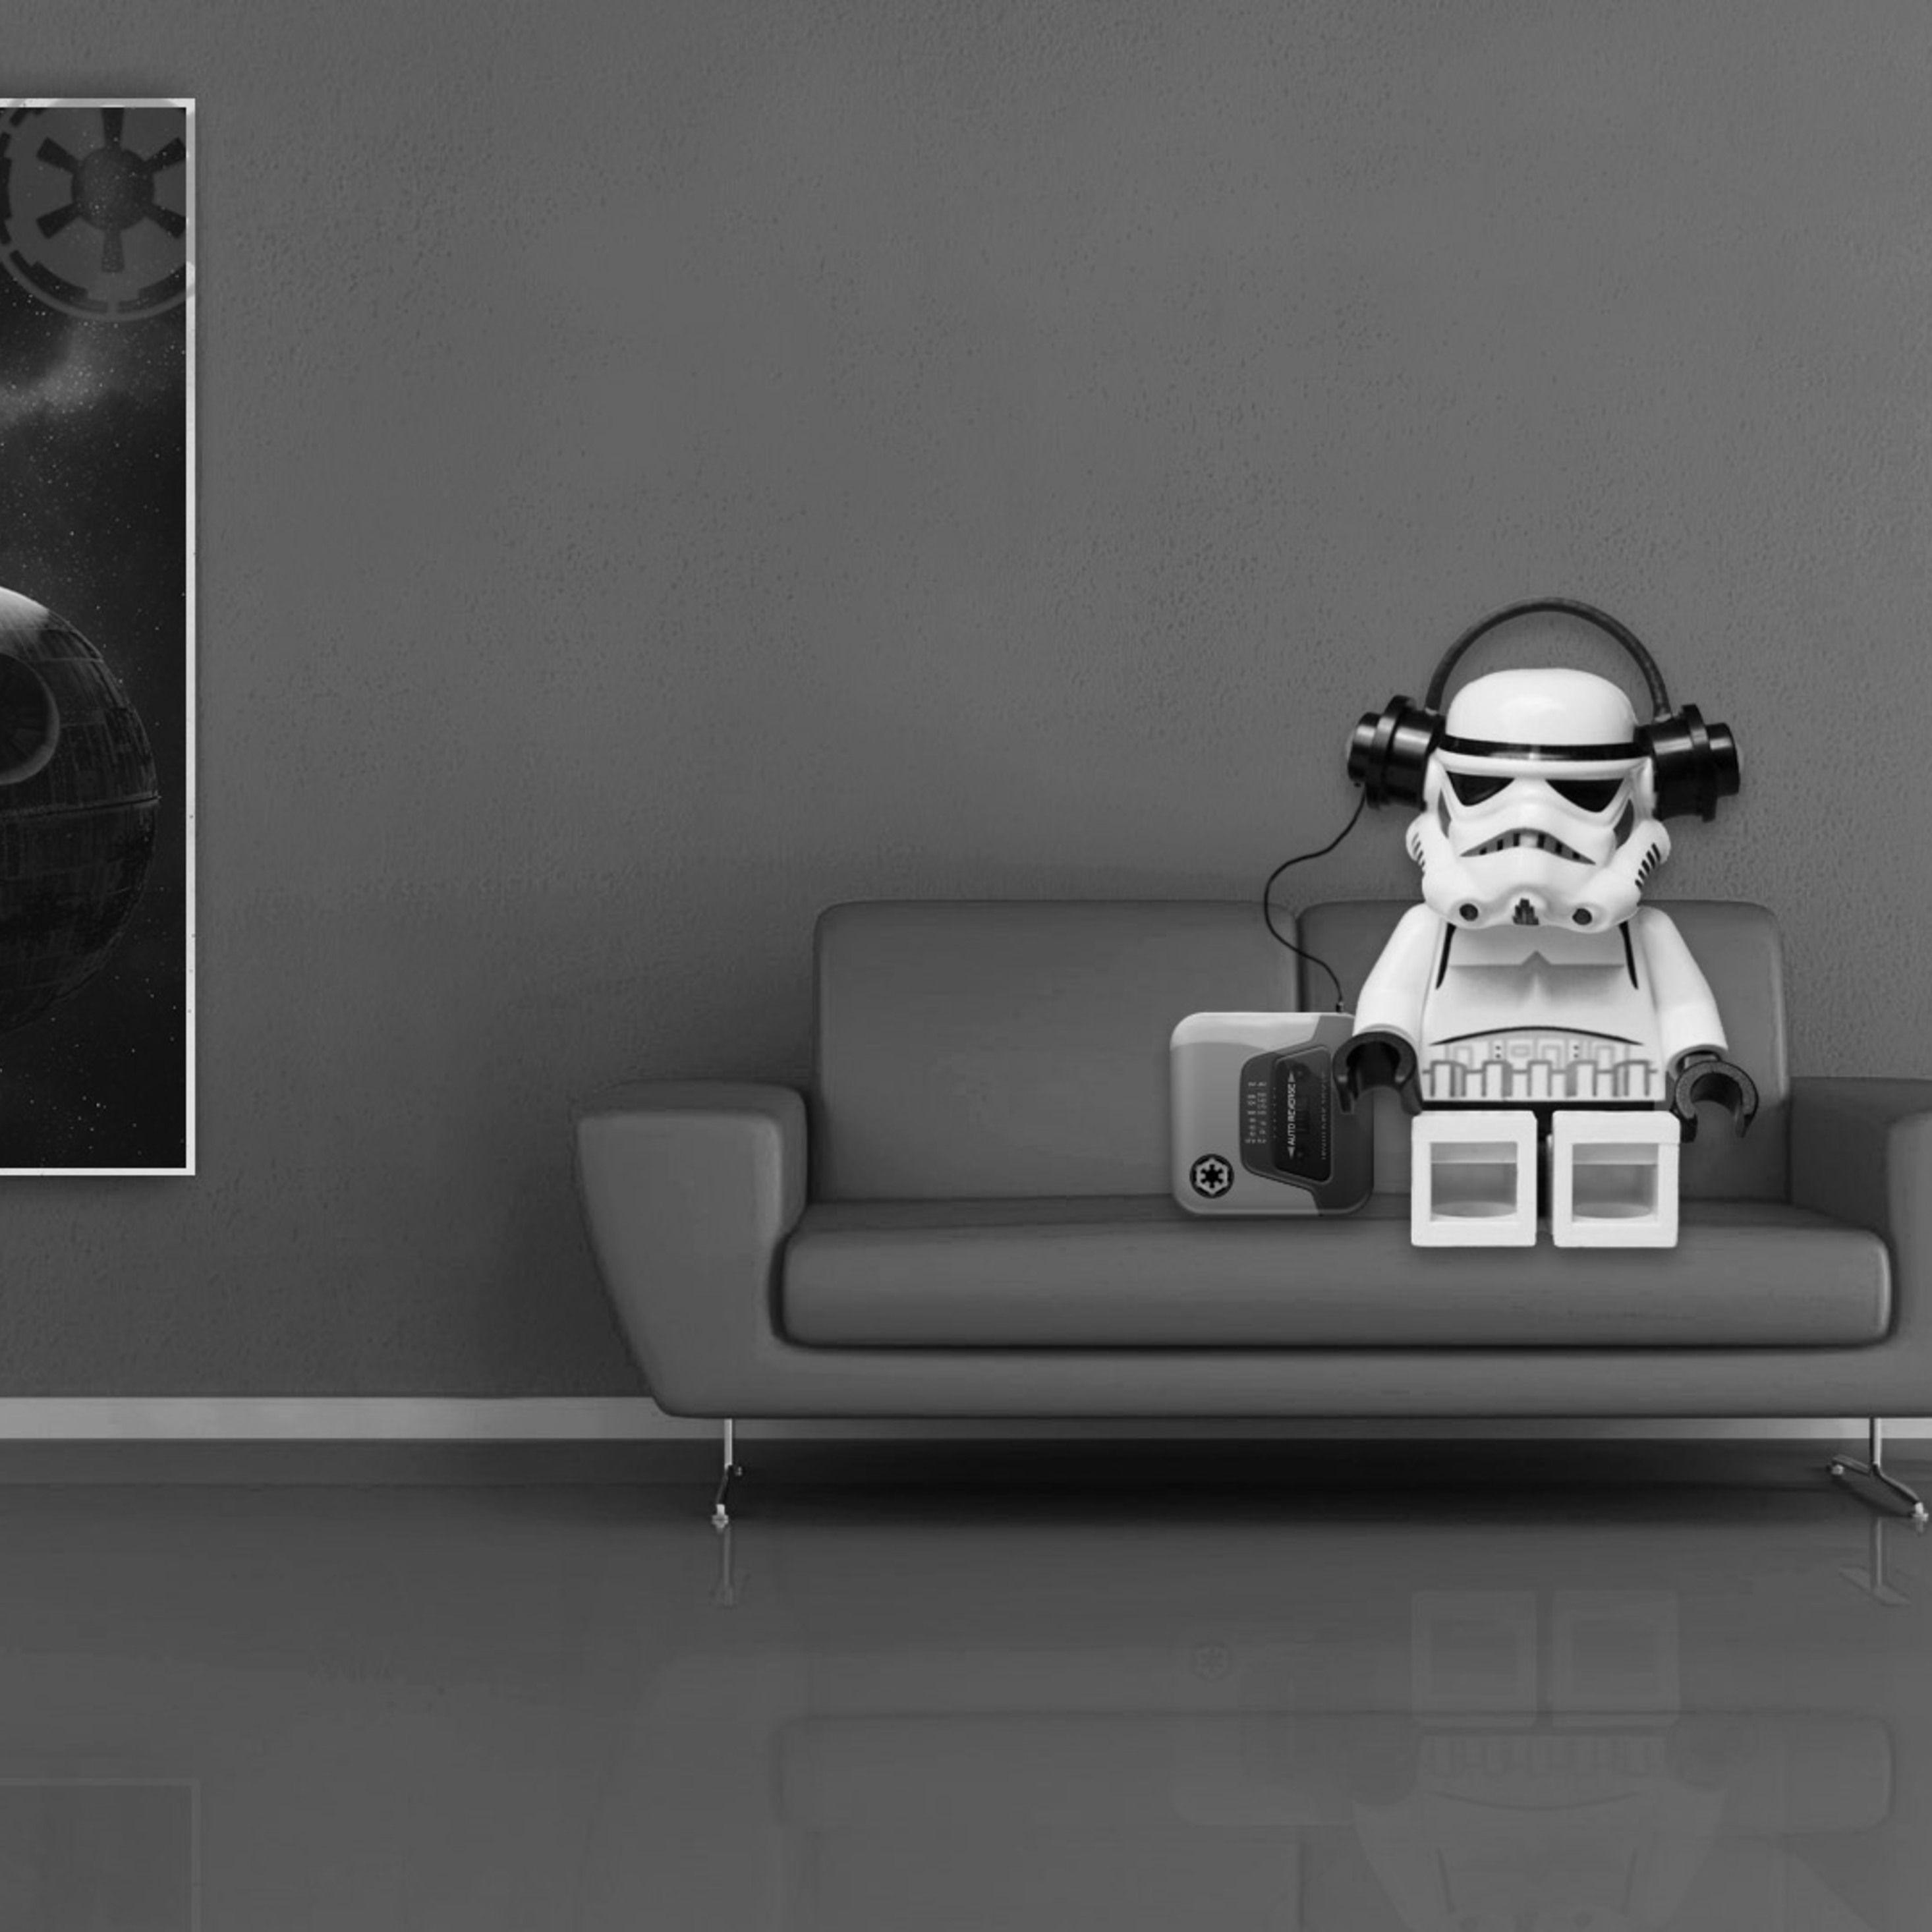 Stormtrooper Lego Star Wars iPad Pro Retina Display HD 4k